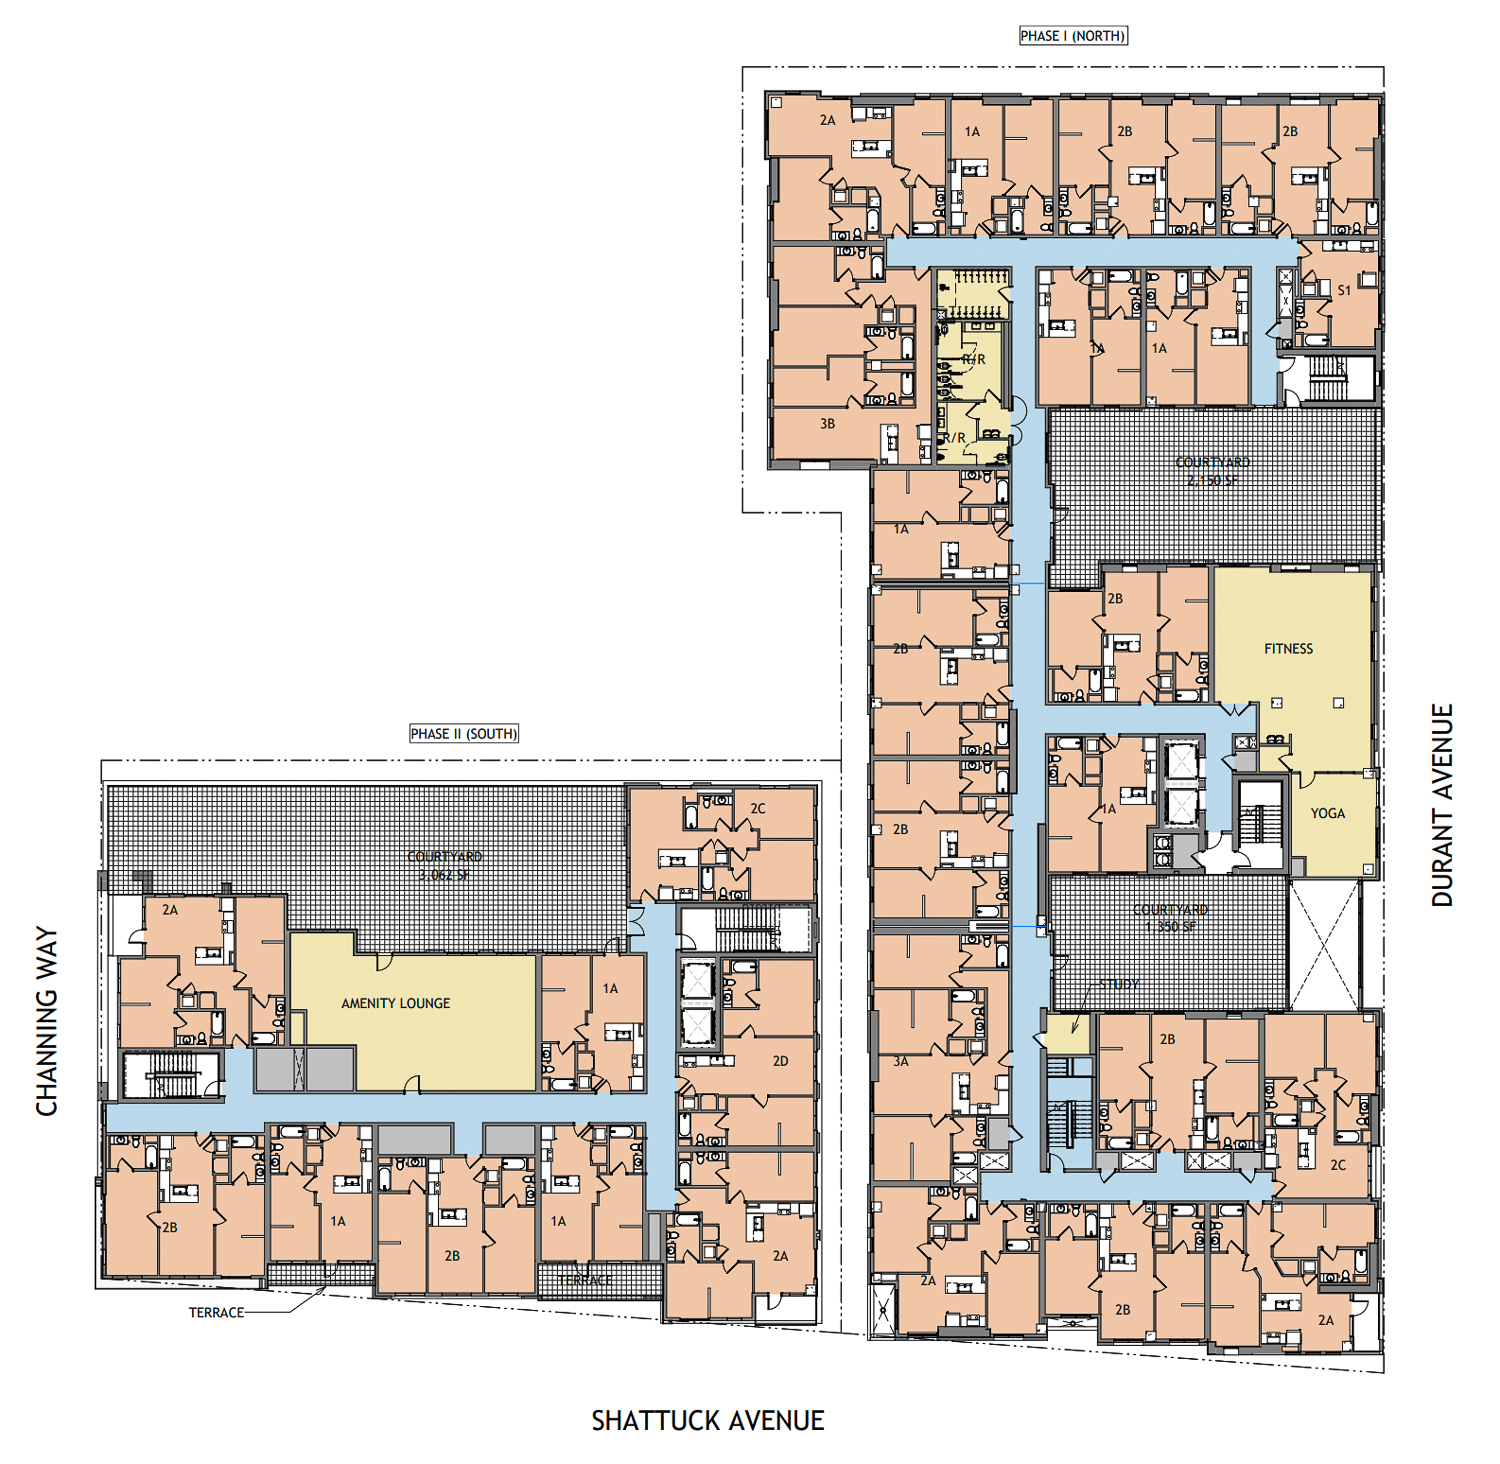 2352 Shattuck Avenue amenity level floor plan, illustration by Niles Bolton Associates